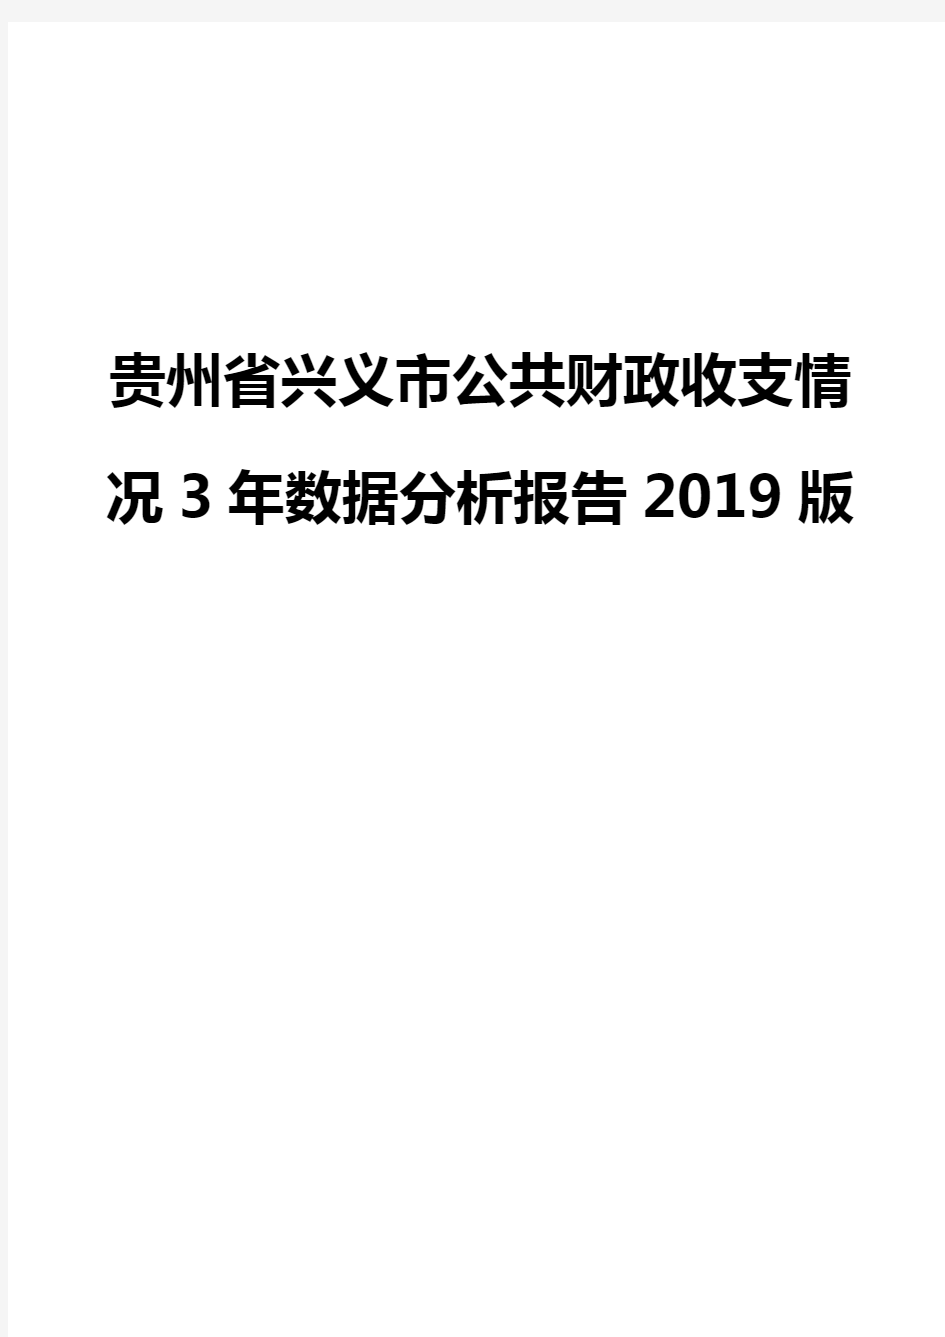 贵州省兴义市公共财政收支情况3年数据分析报告2019版